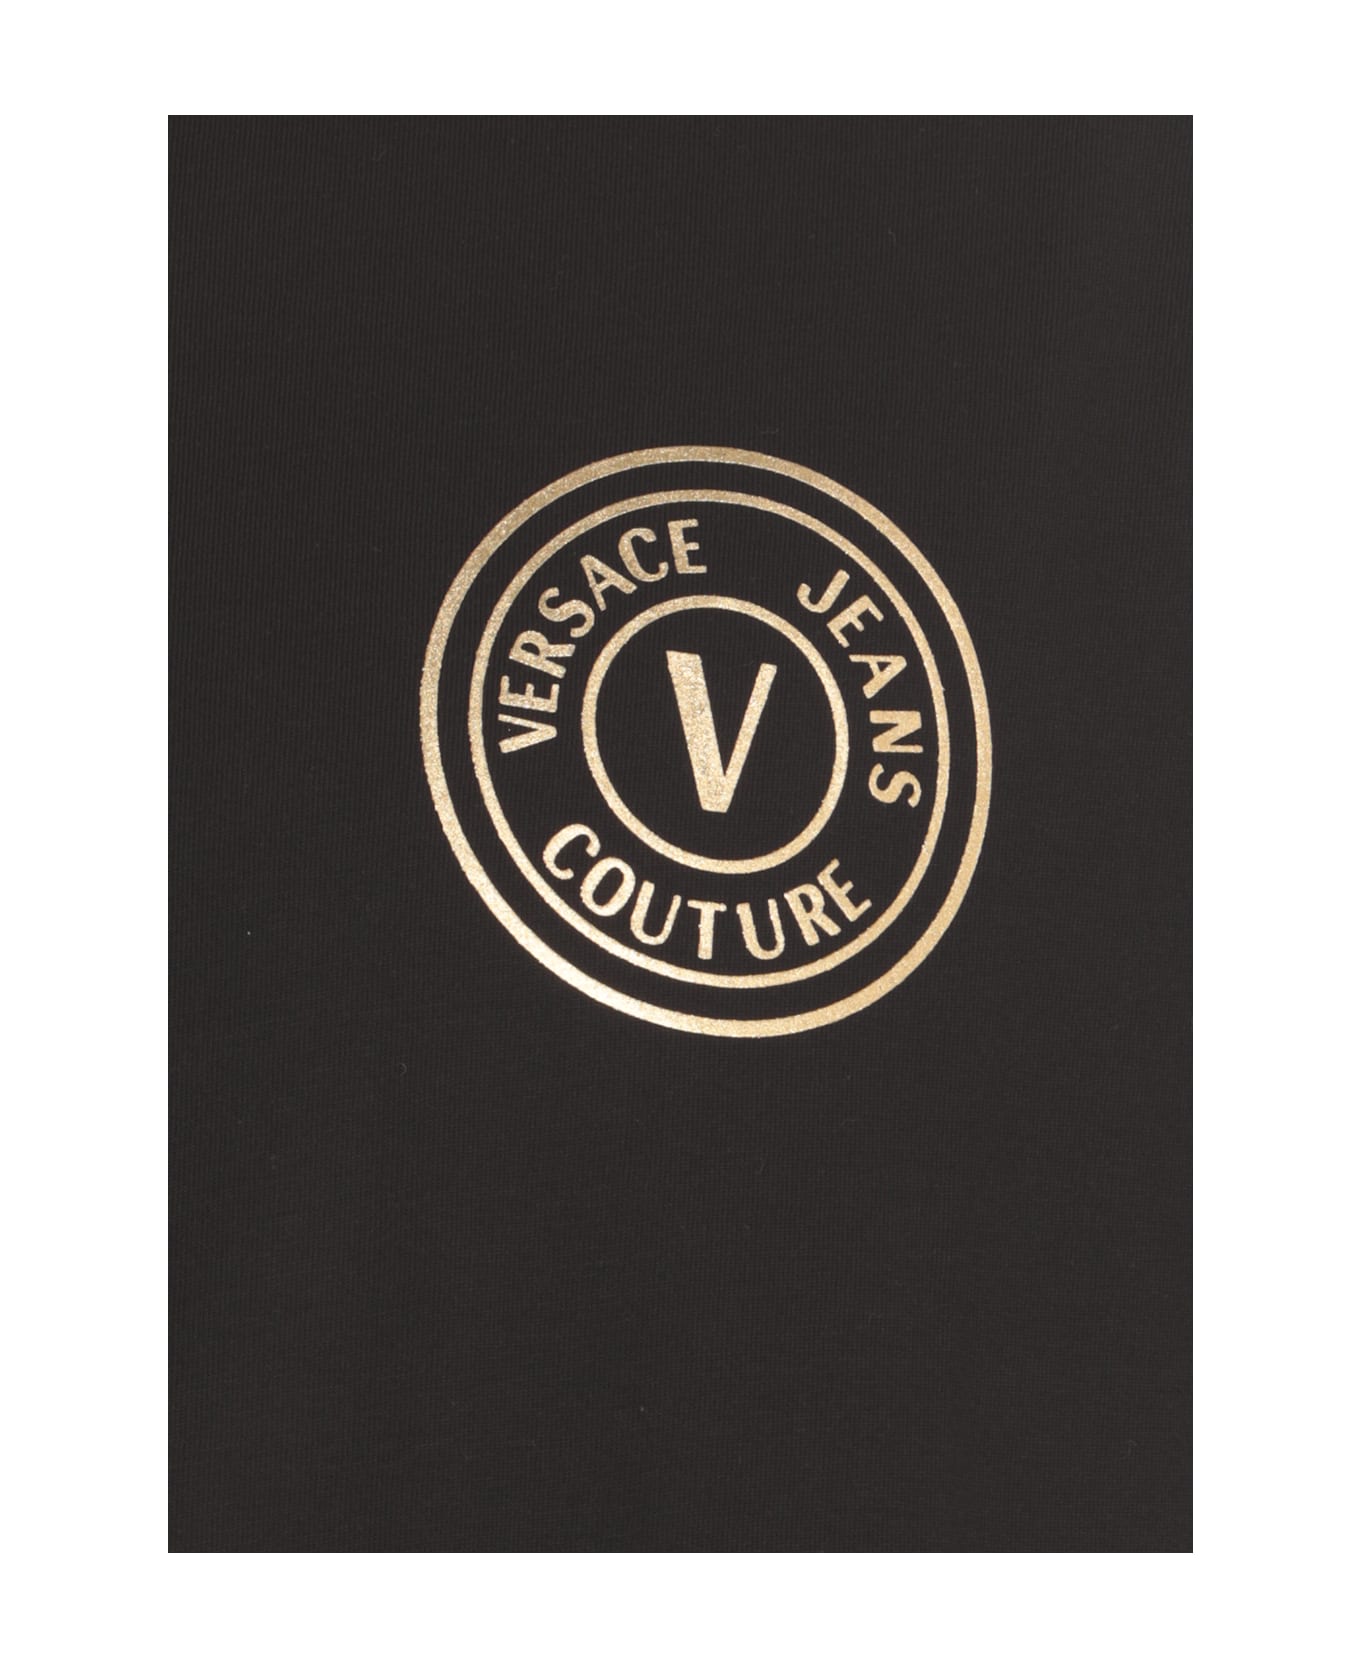 Versace Jeans Couture T-shirt With Vemblem Logo - Black